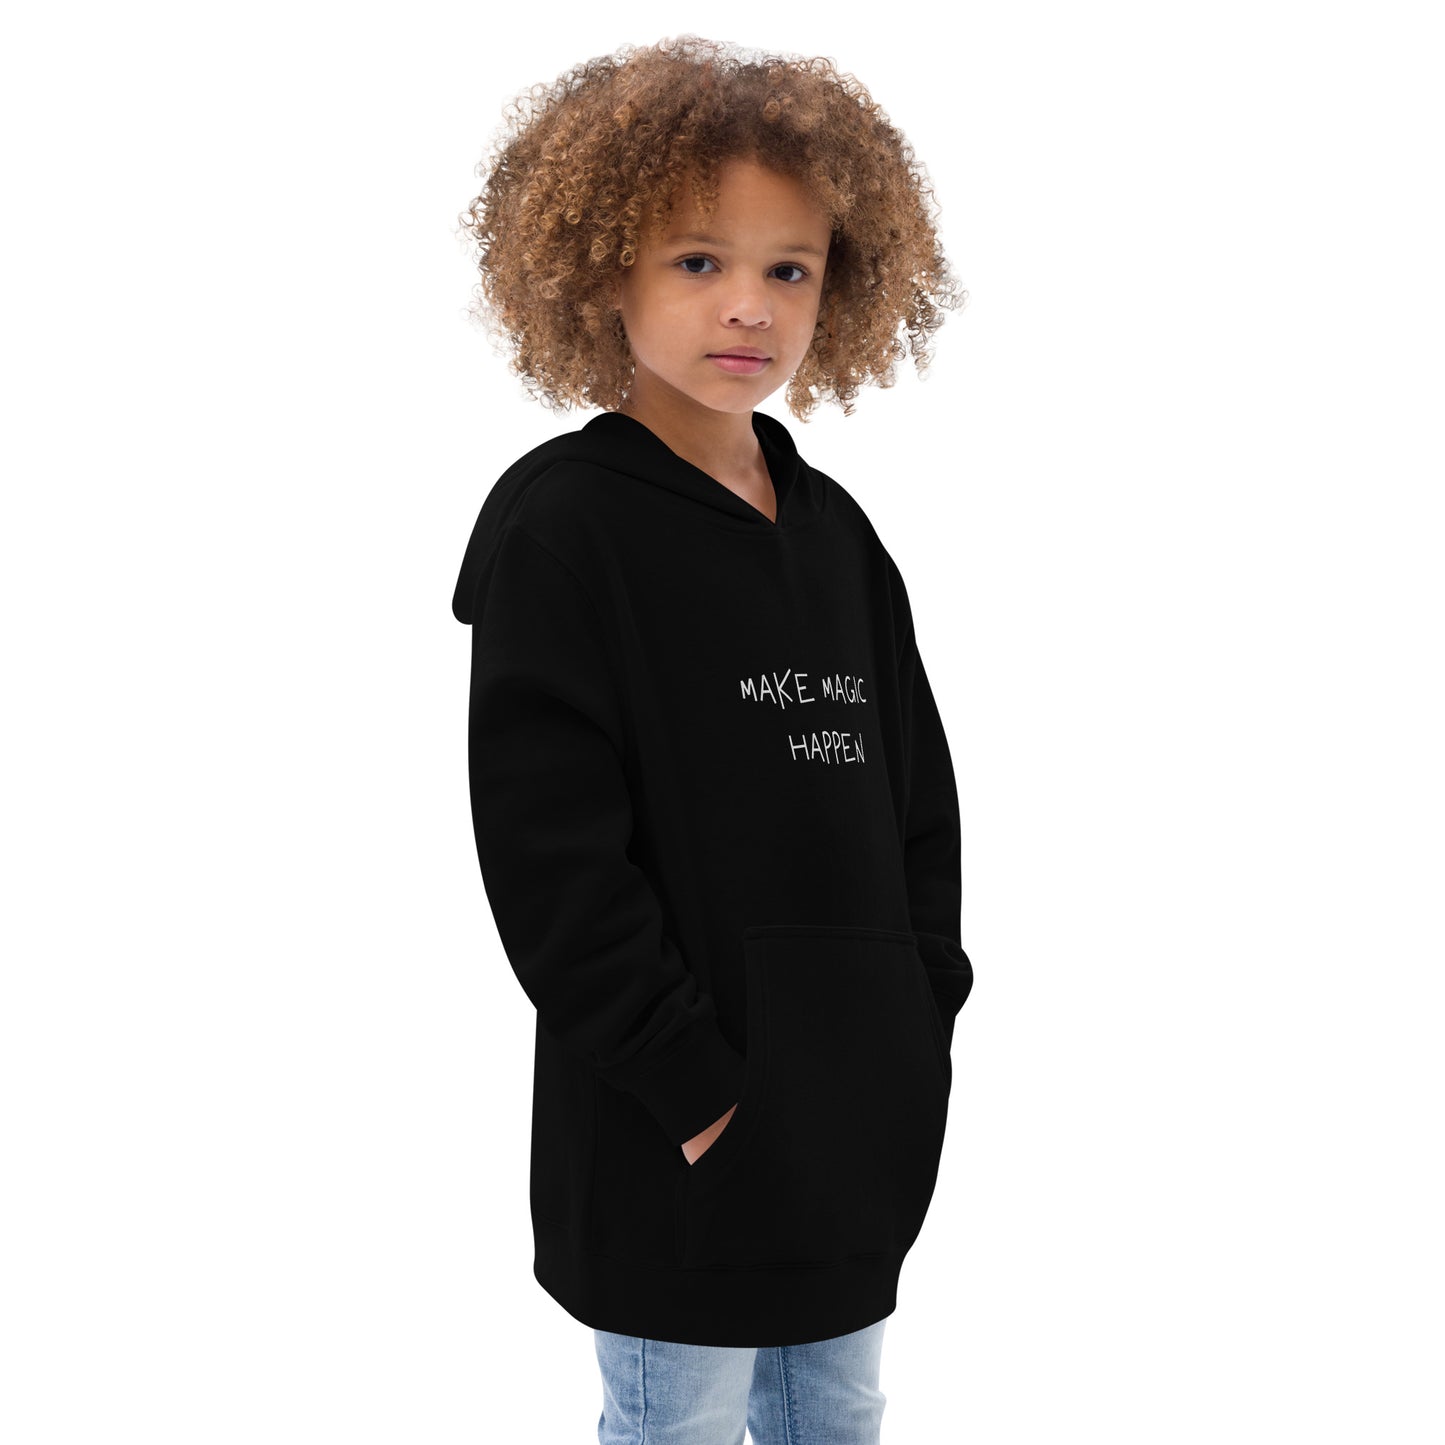 Kids fleece hoodie - MAKE MAGIC HAPPEN